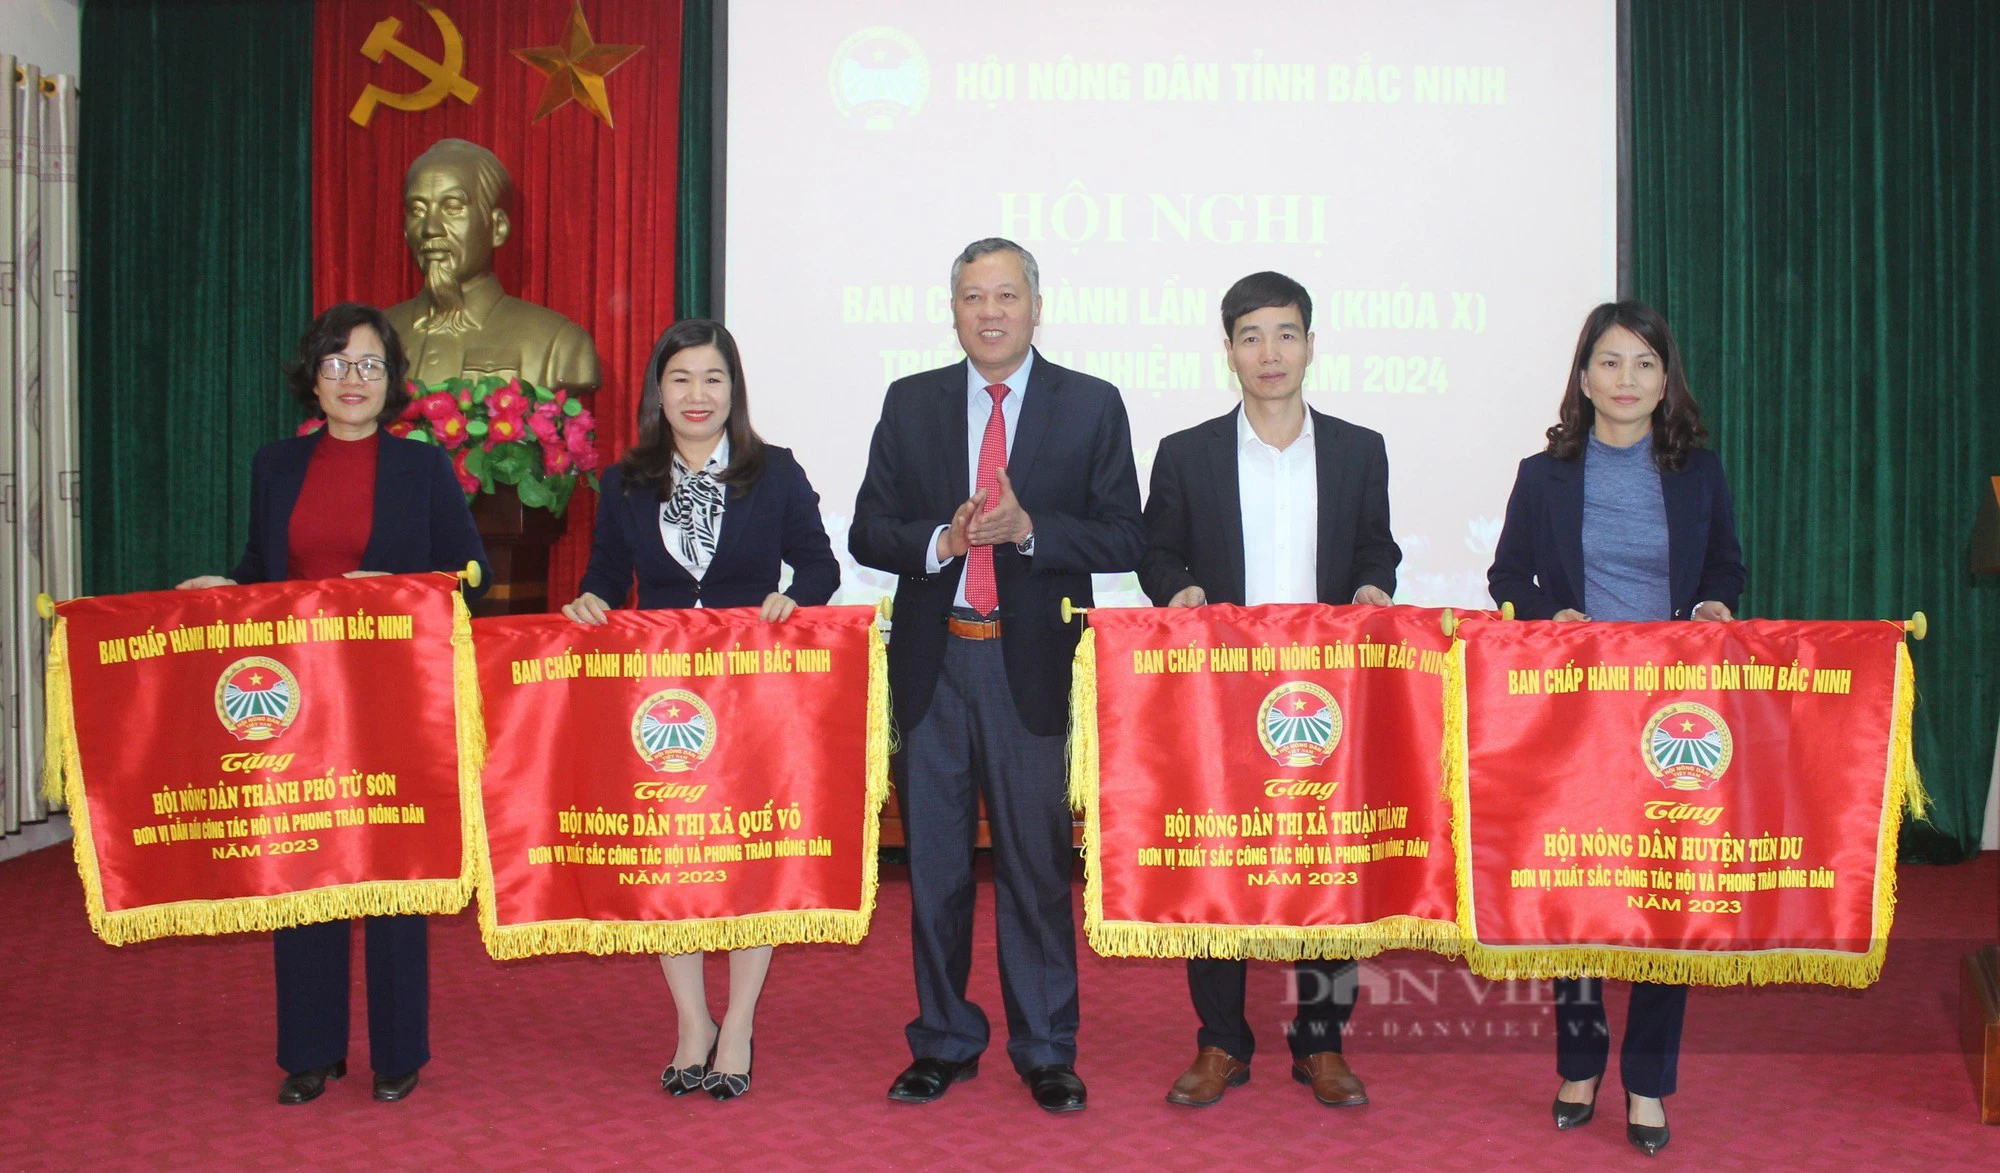 Hội Nông dân tỉnh Bắc Ninh hỗ trợ đưa hộ sản xuất lên sàn thương mại điện tử- Ảnh 4.